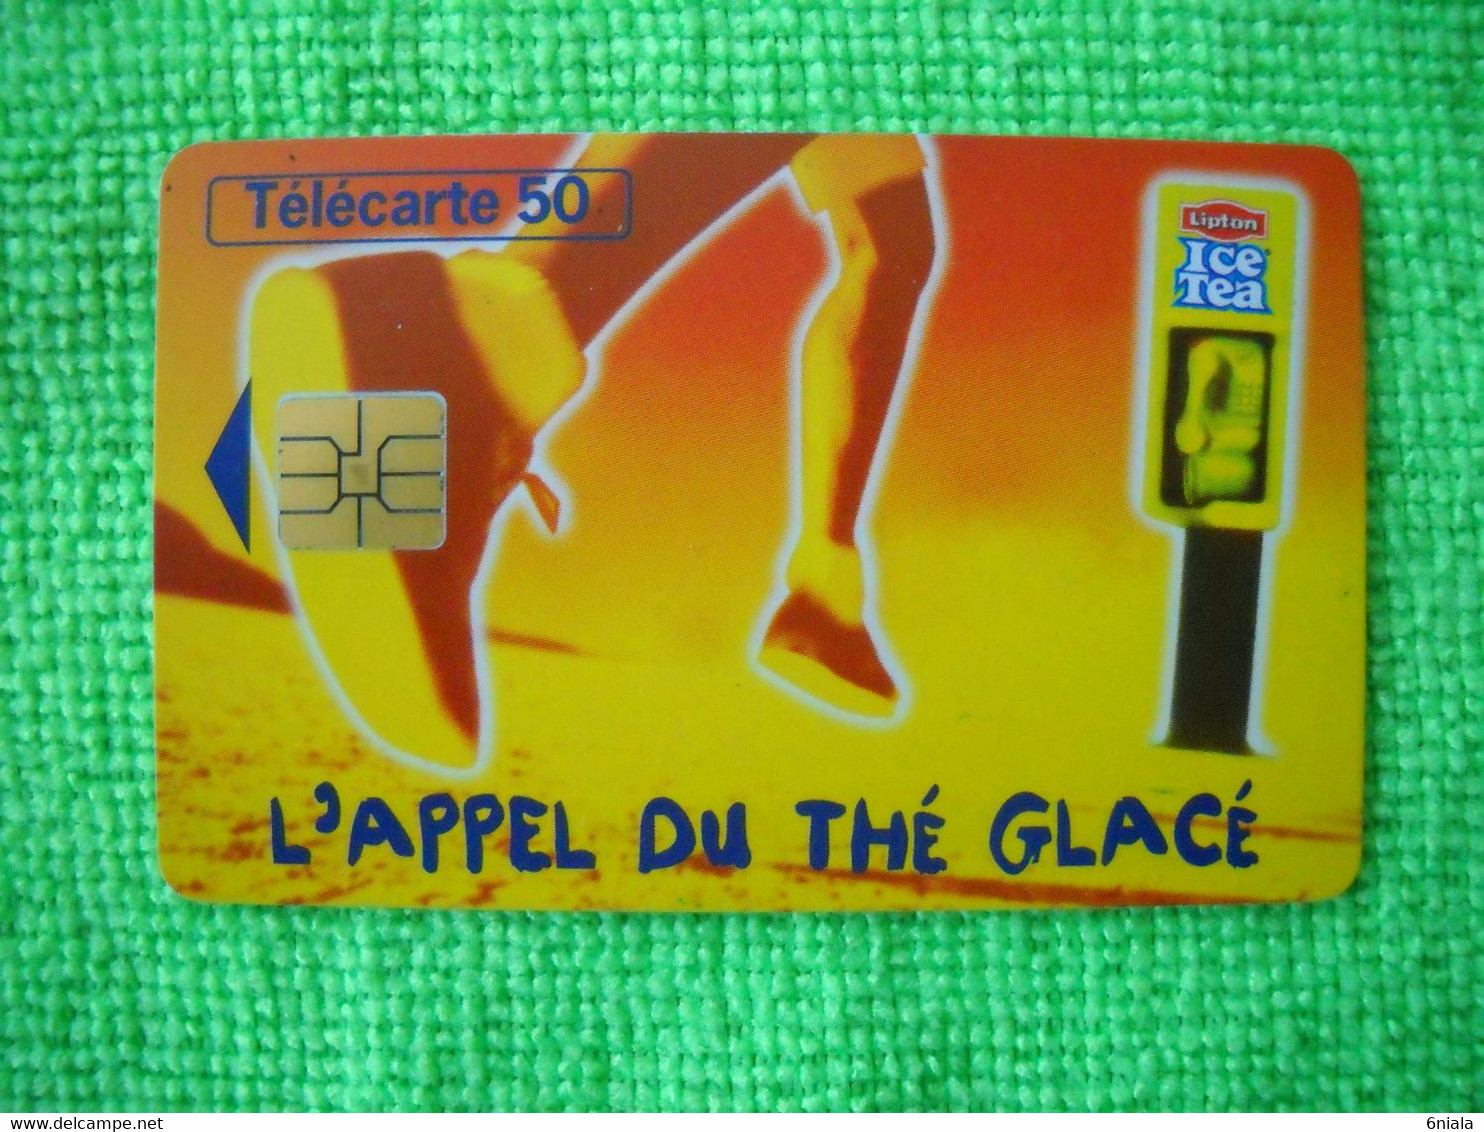 7083 Télécarte Collection ICE TEA L'appel Du Thé Glacé   (Boisson) 50u  ( Recto Verso)  Carte Téléphonique - Alimentación